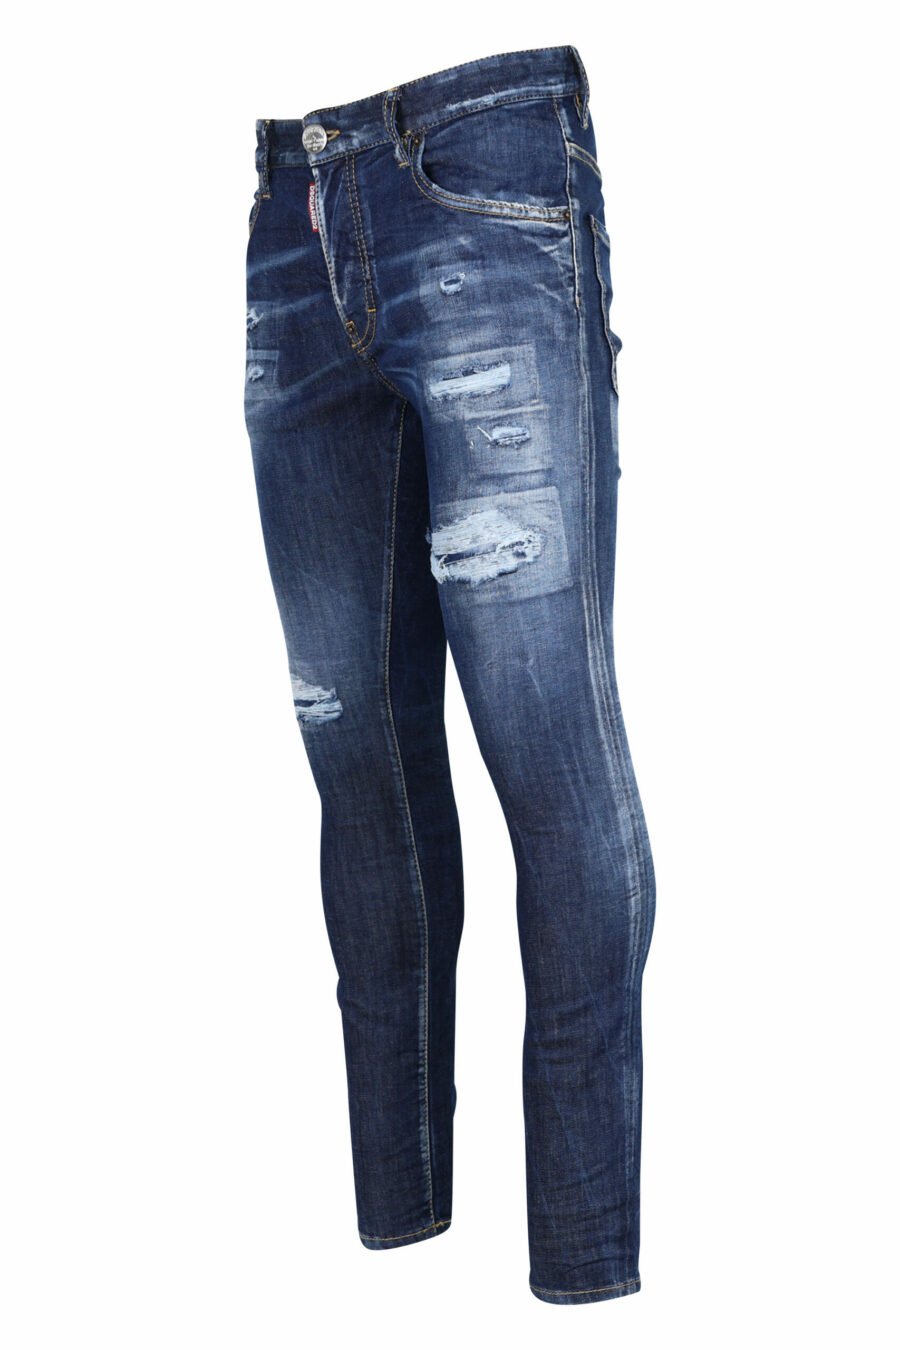 Blaue "super twinky jean" Jeans mit Rissen und ausgefranst - 8054148106201 1 skaliert